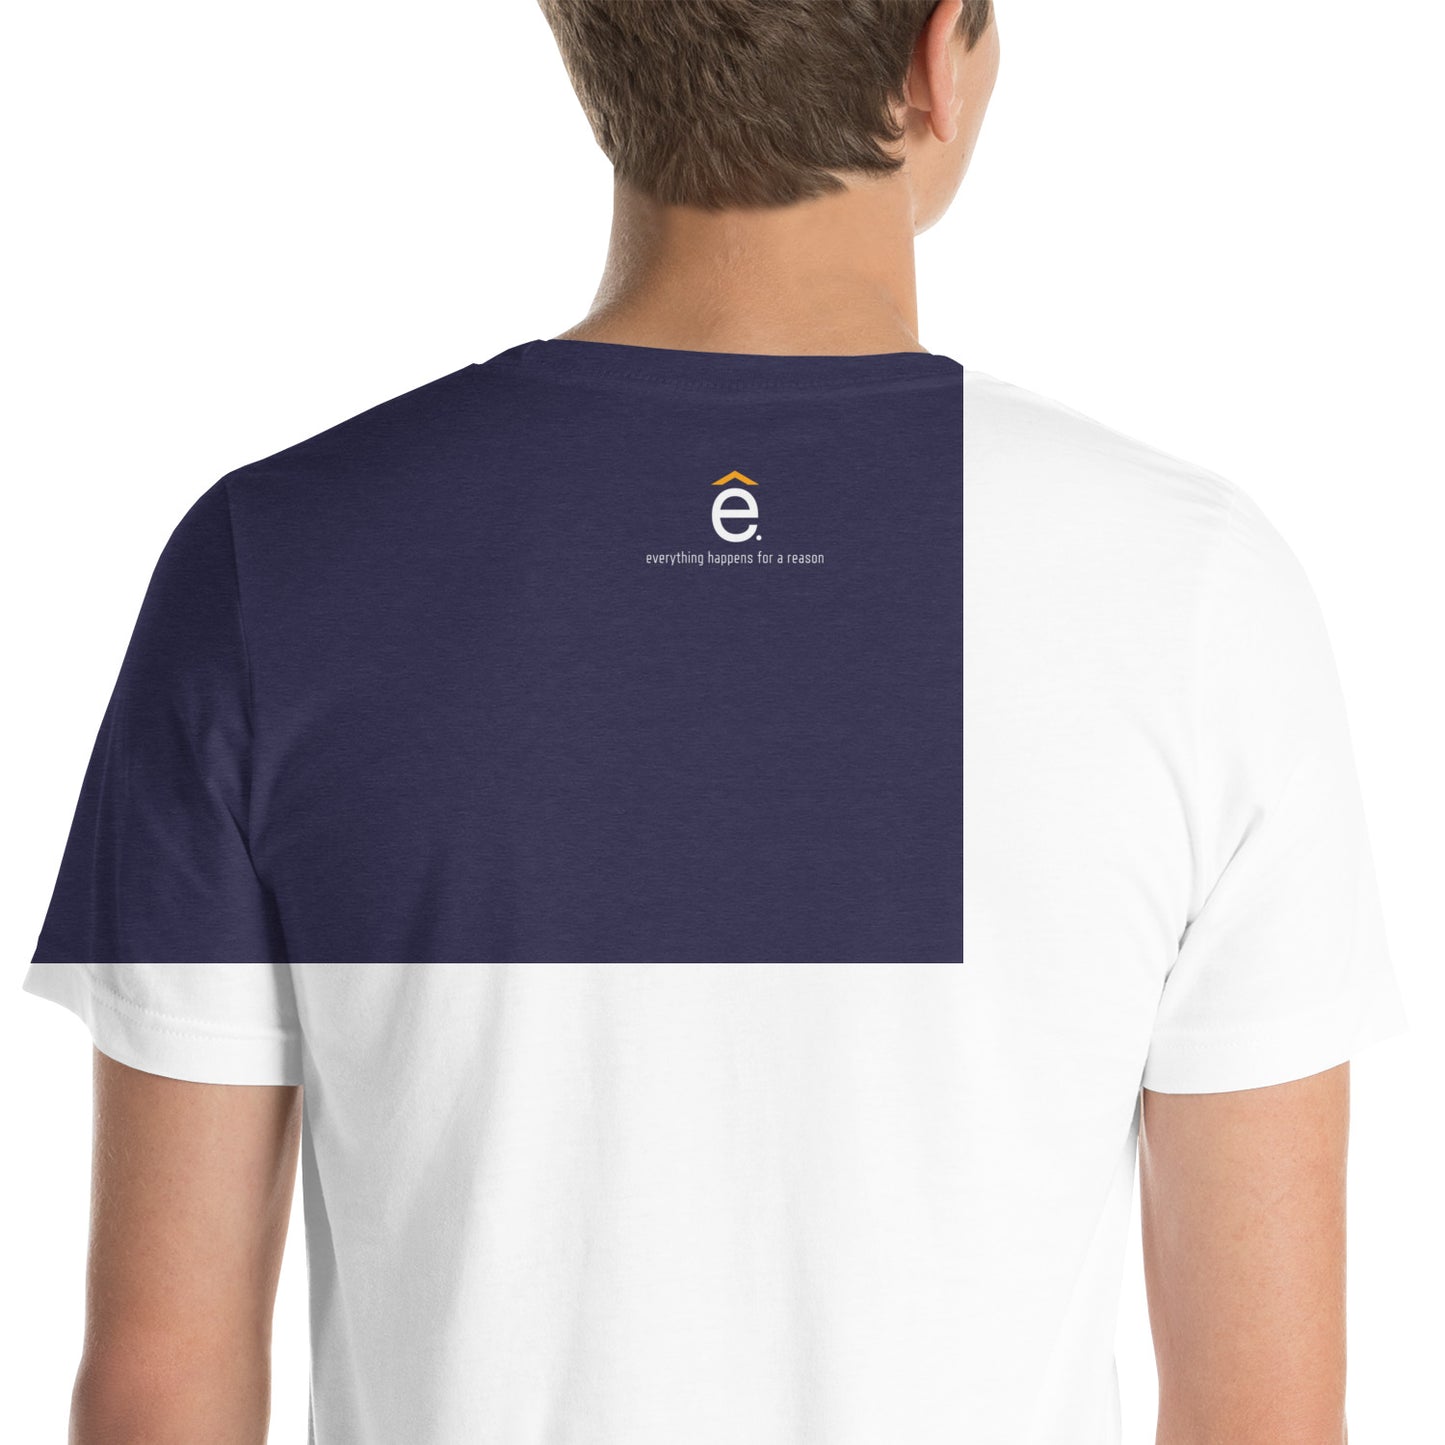 ehfar Unisex t-shirt (light lettering)